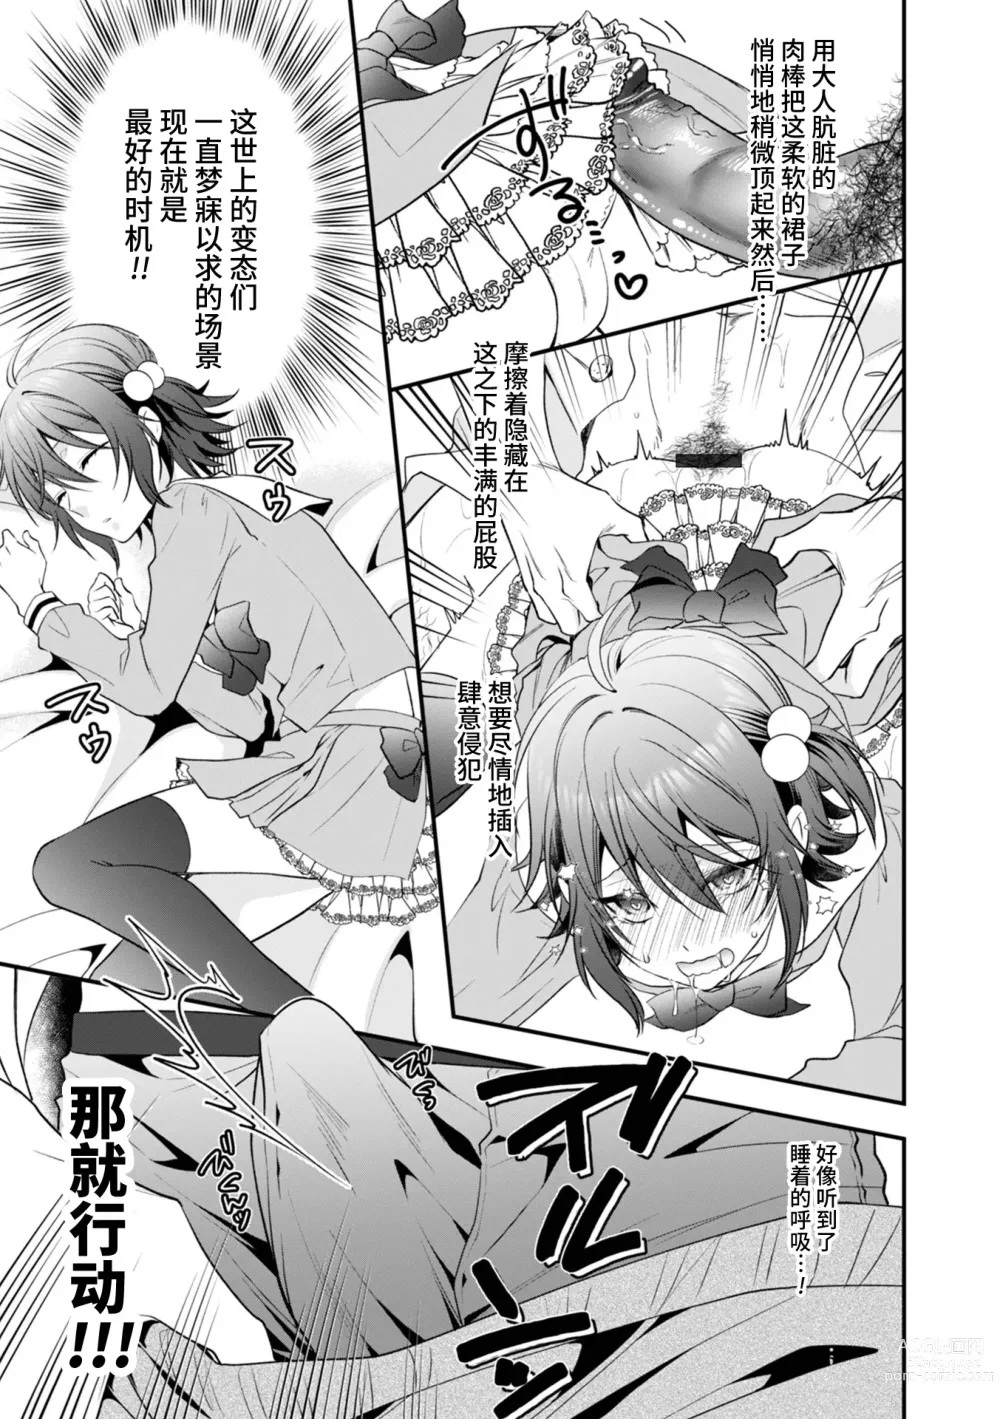 Page 5 of manga Hatsujou Nemuri Hime - Estrus sleeping princess